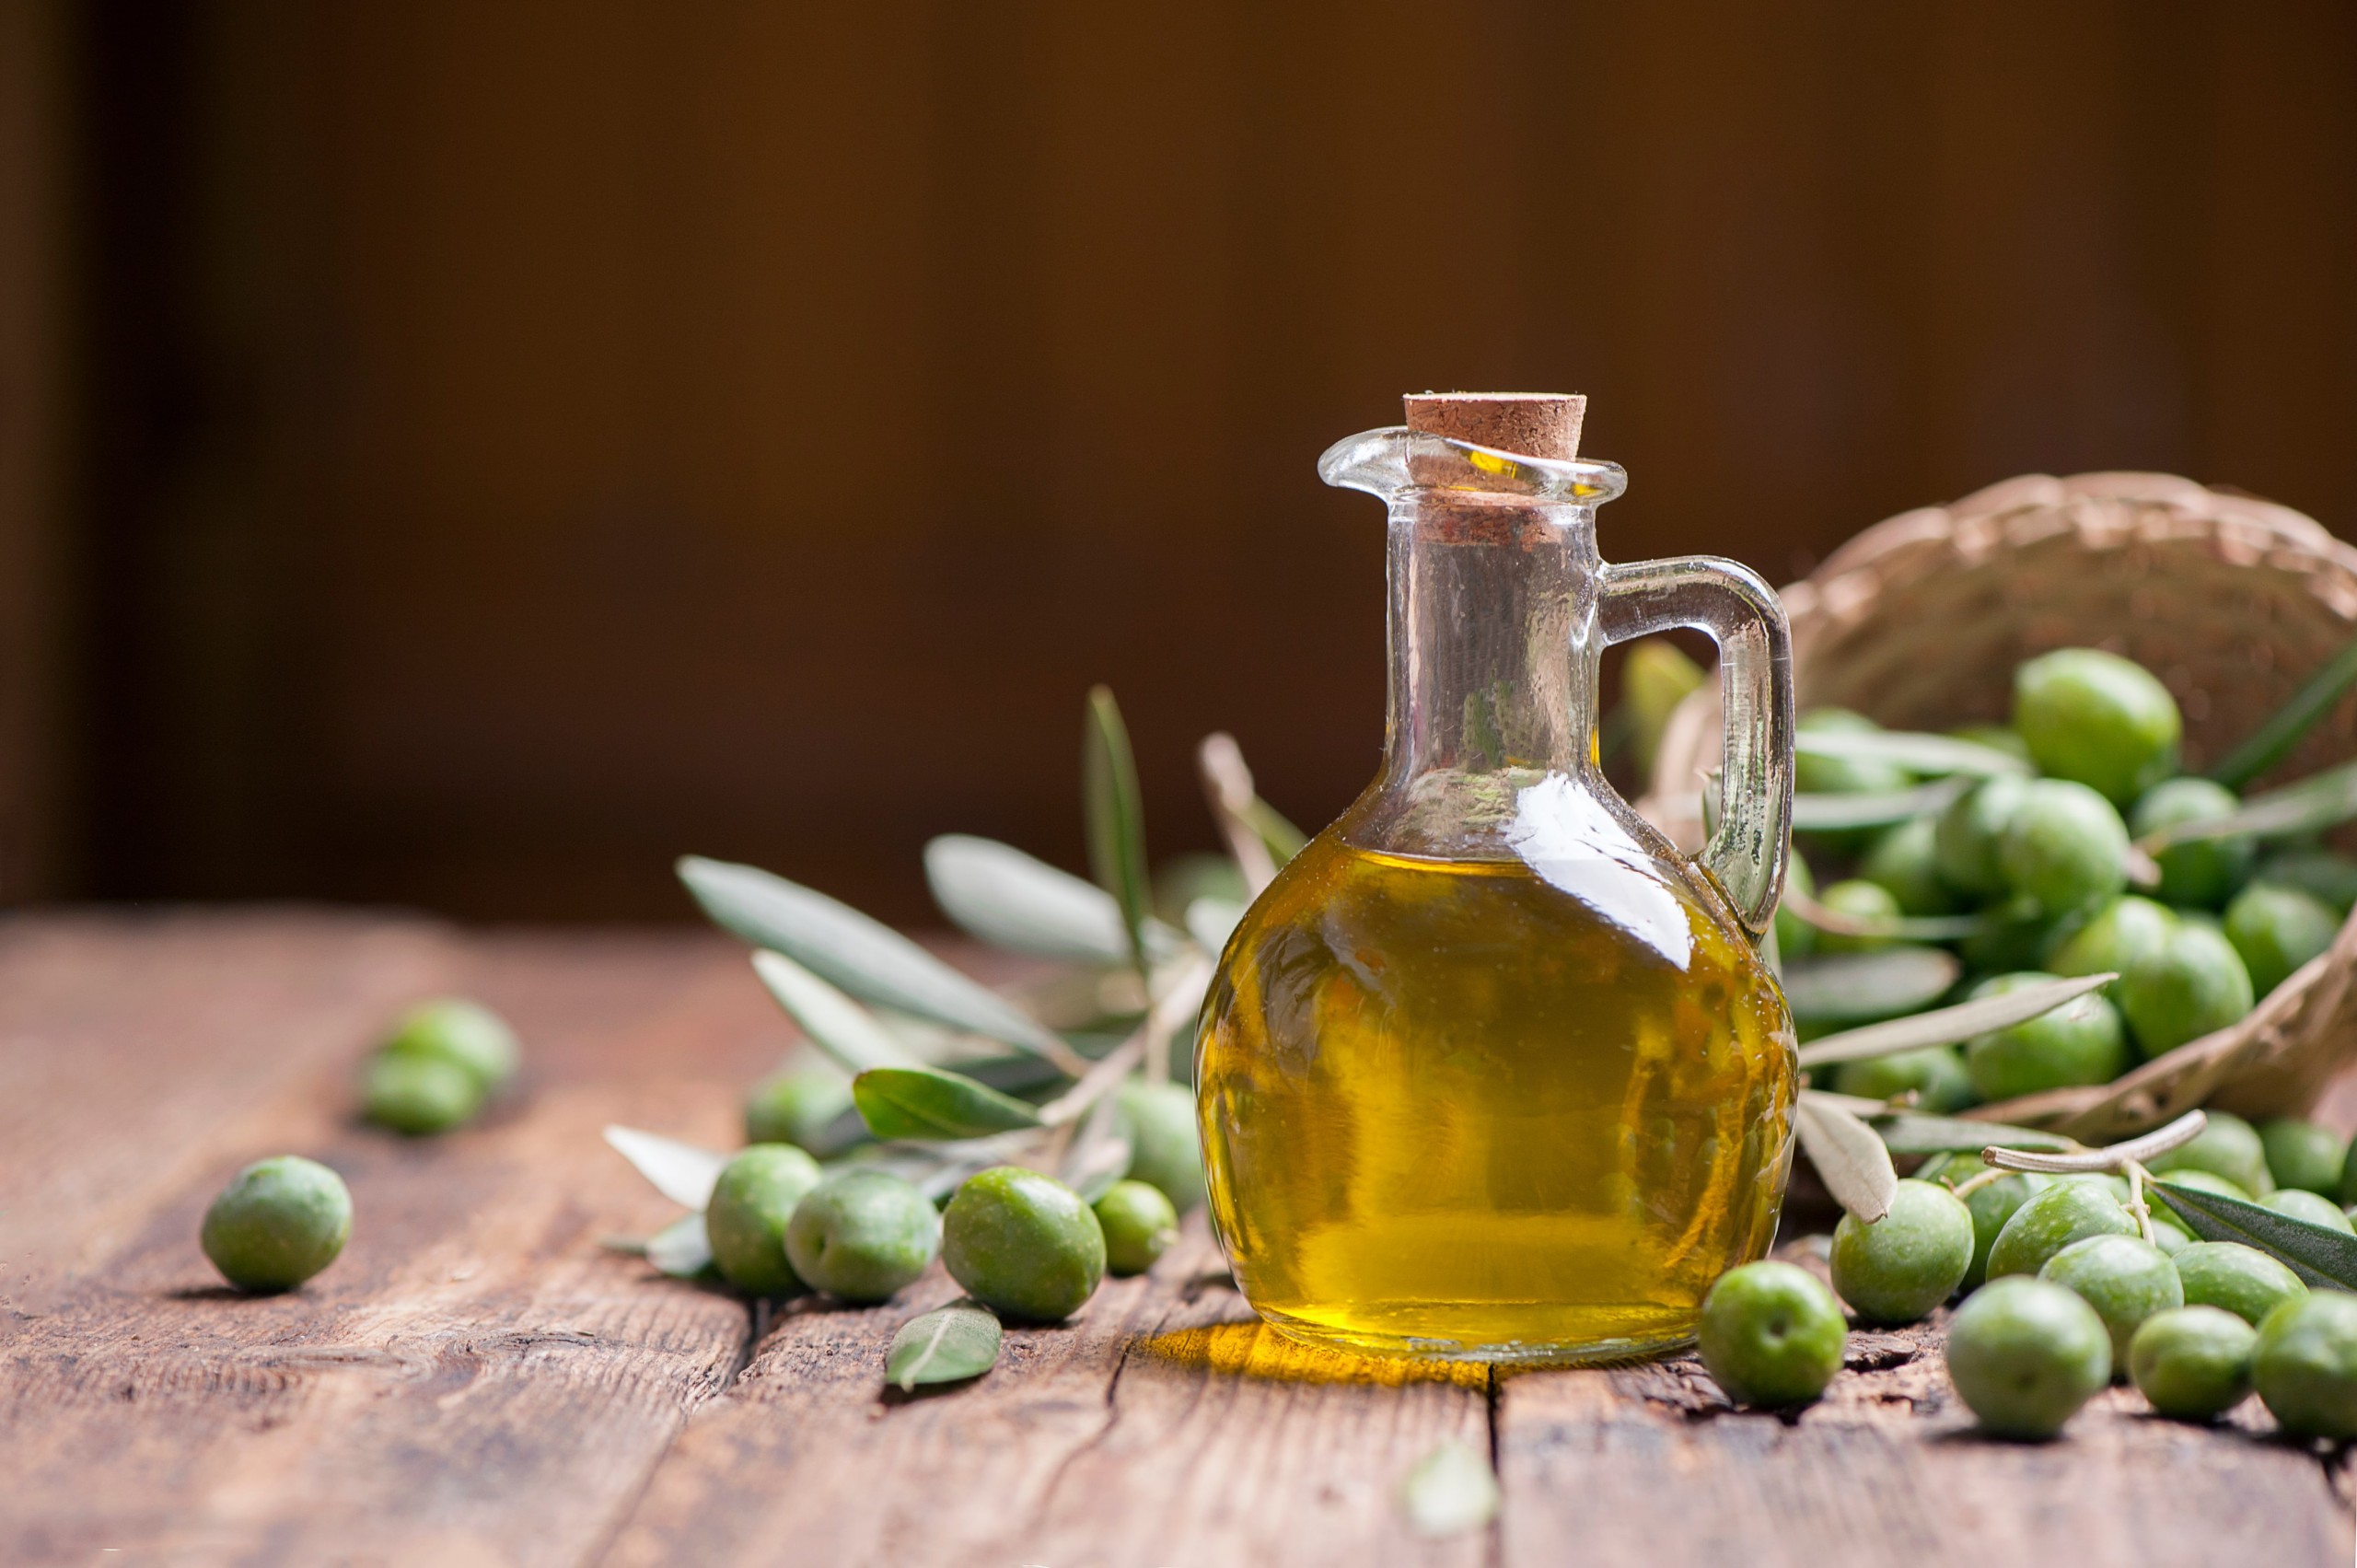 Rejuvenate with Olive Oil: Niz Olive's Anti-Aging Secrets